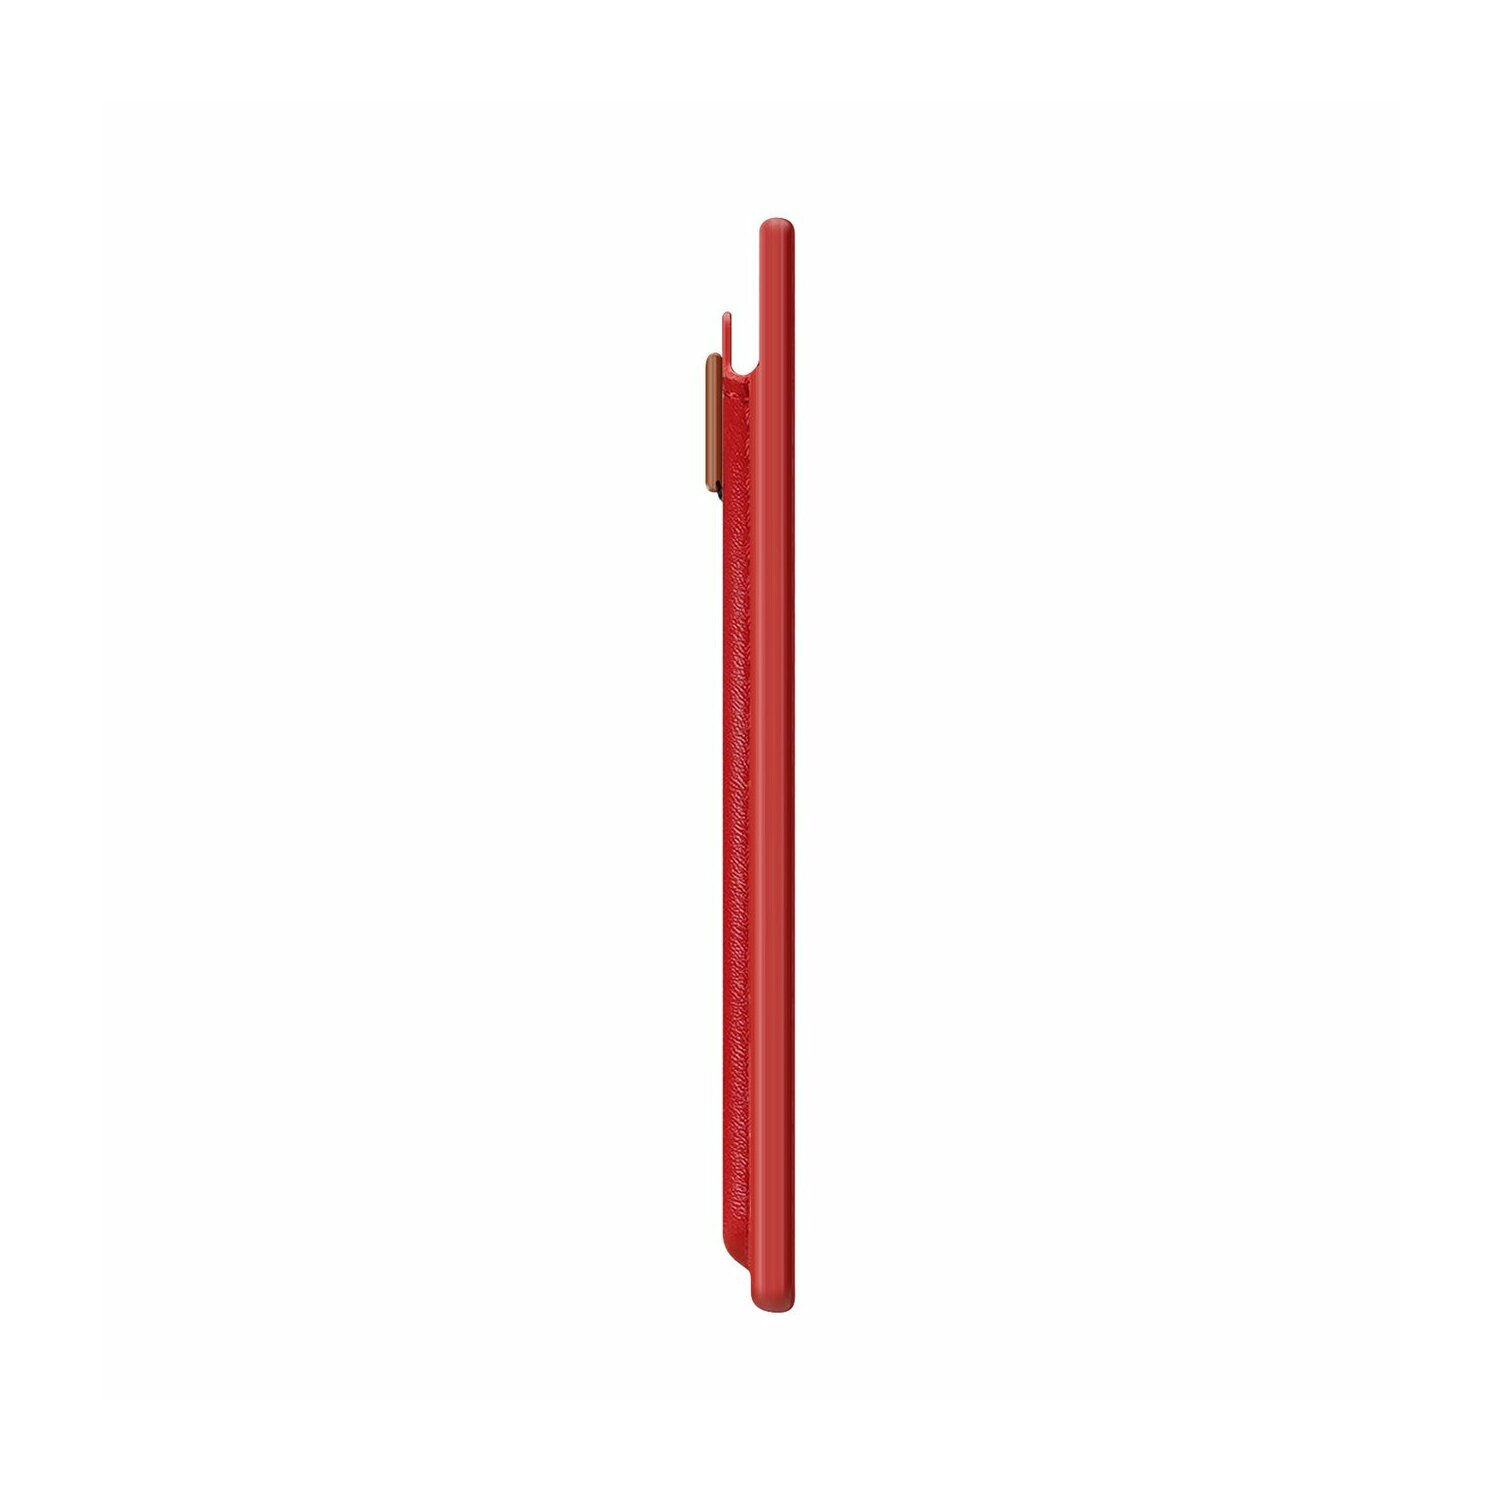 DUCIS für DUX B-5148 Rot, MagSafe RFID-Blocker Magnetische iPhone Geldbörse